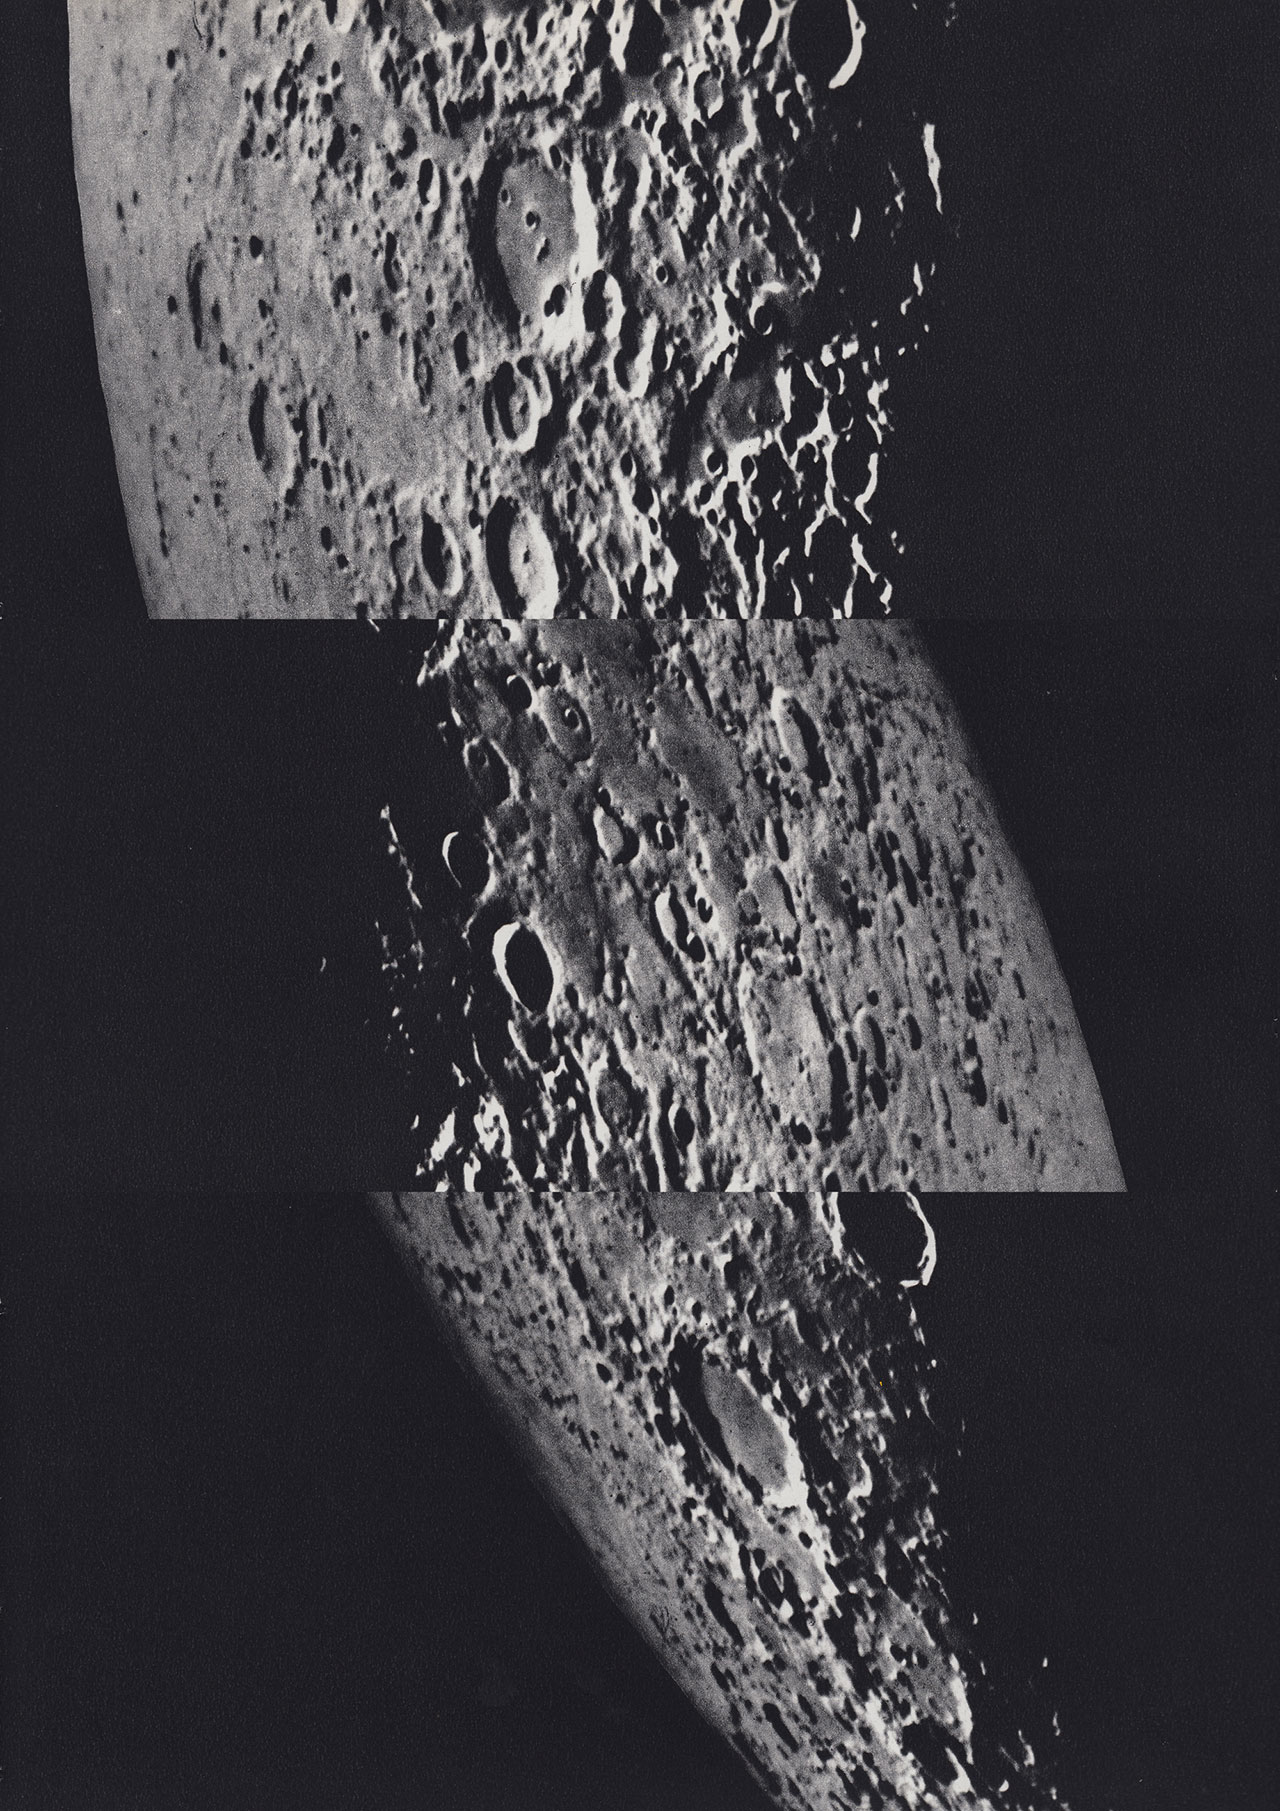 Moons series
Isolation#3
35x50cm
© Luis Dourado.